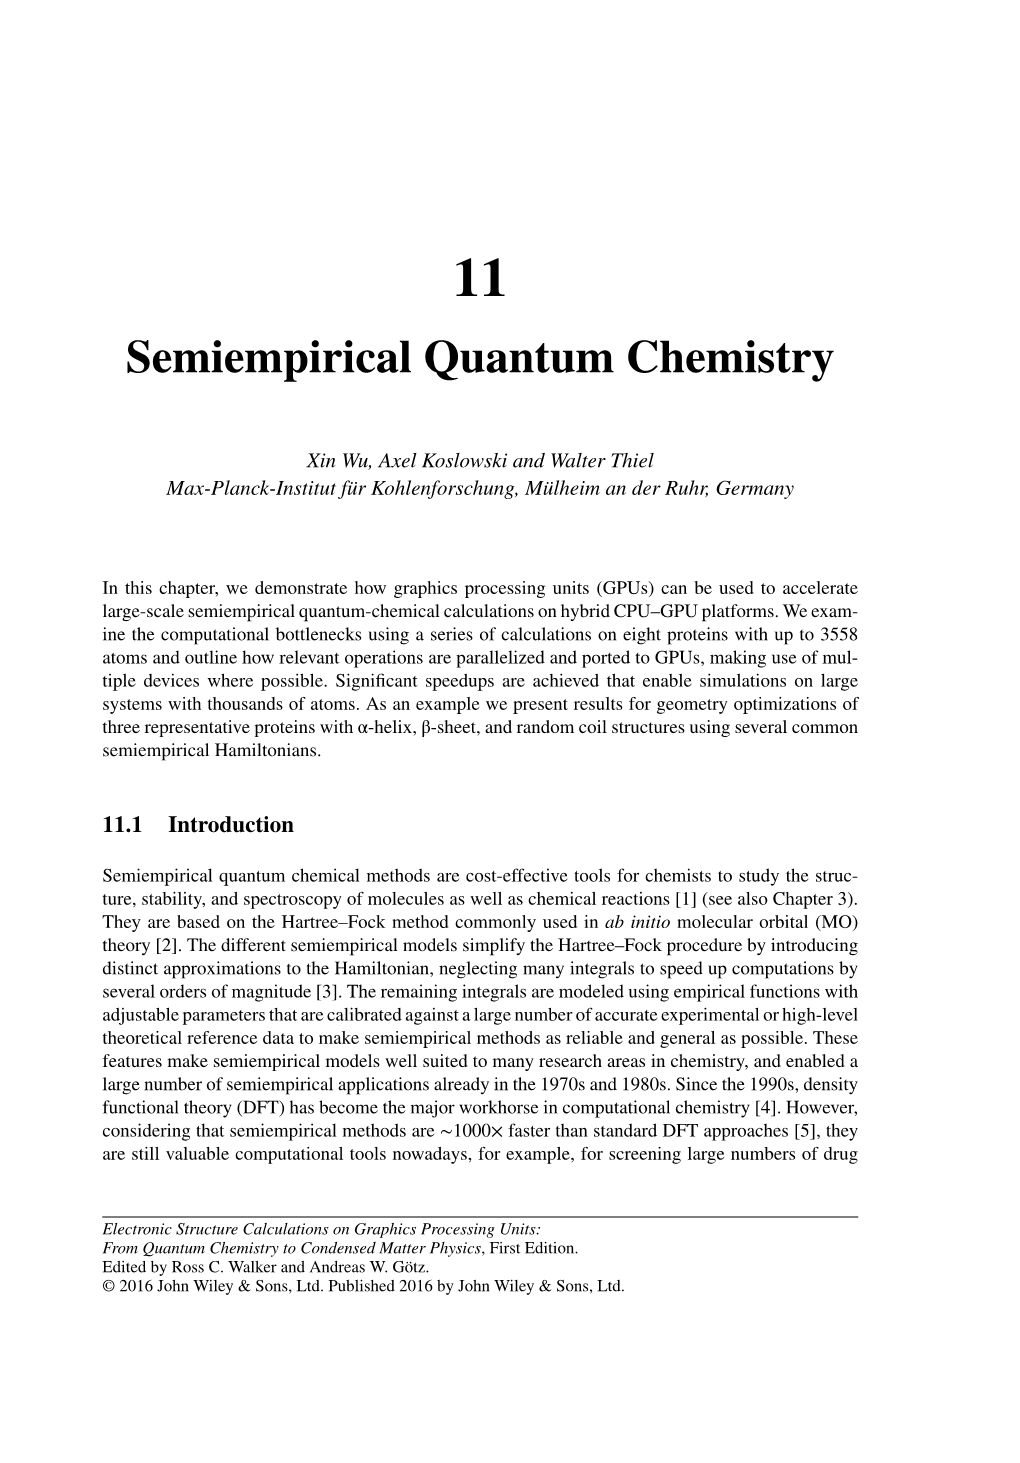 Semiempirical Quantum Chemistry